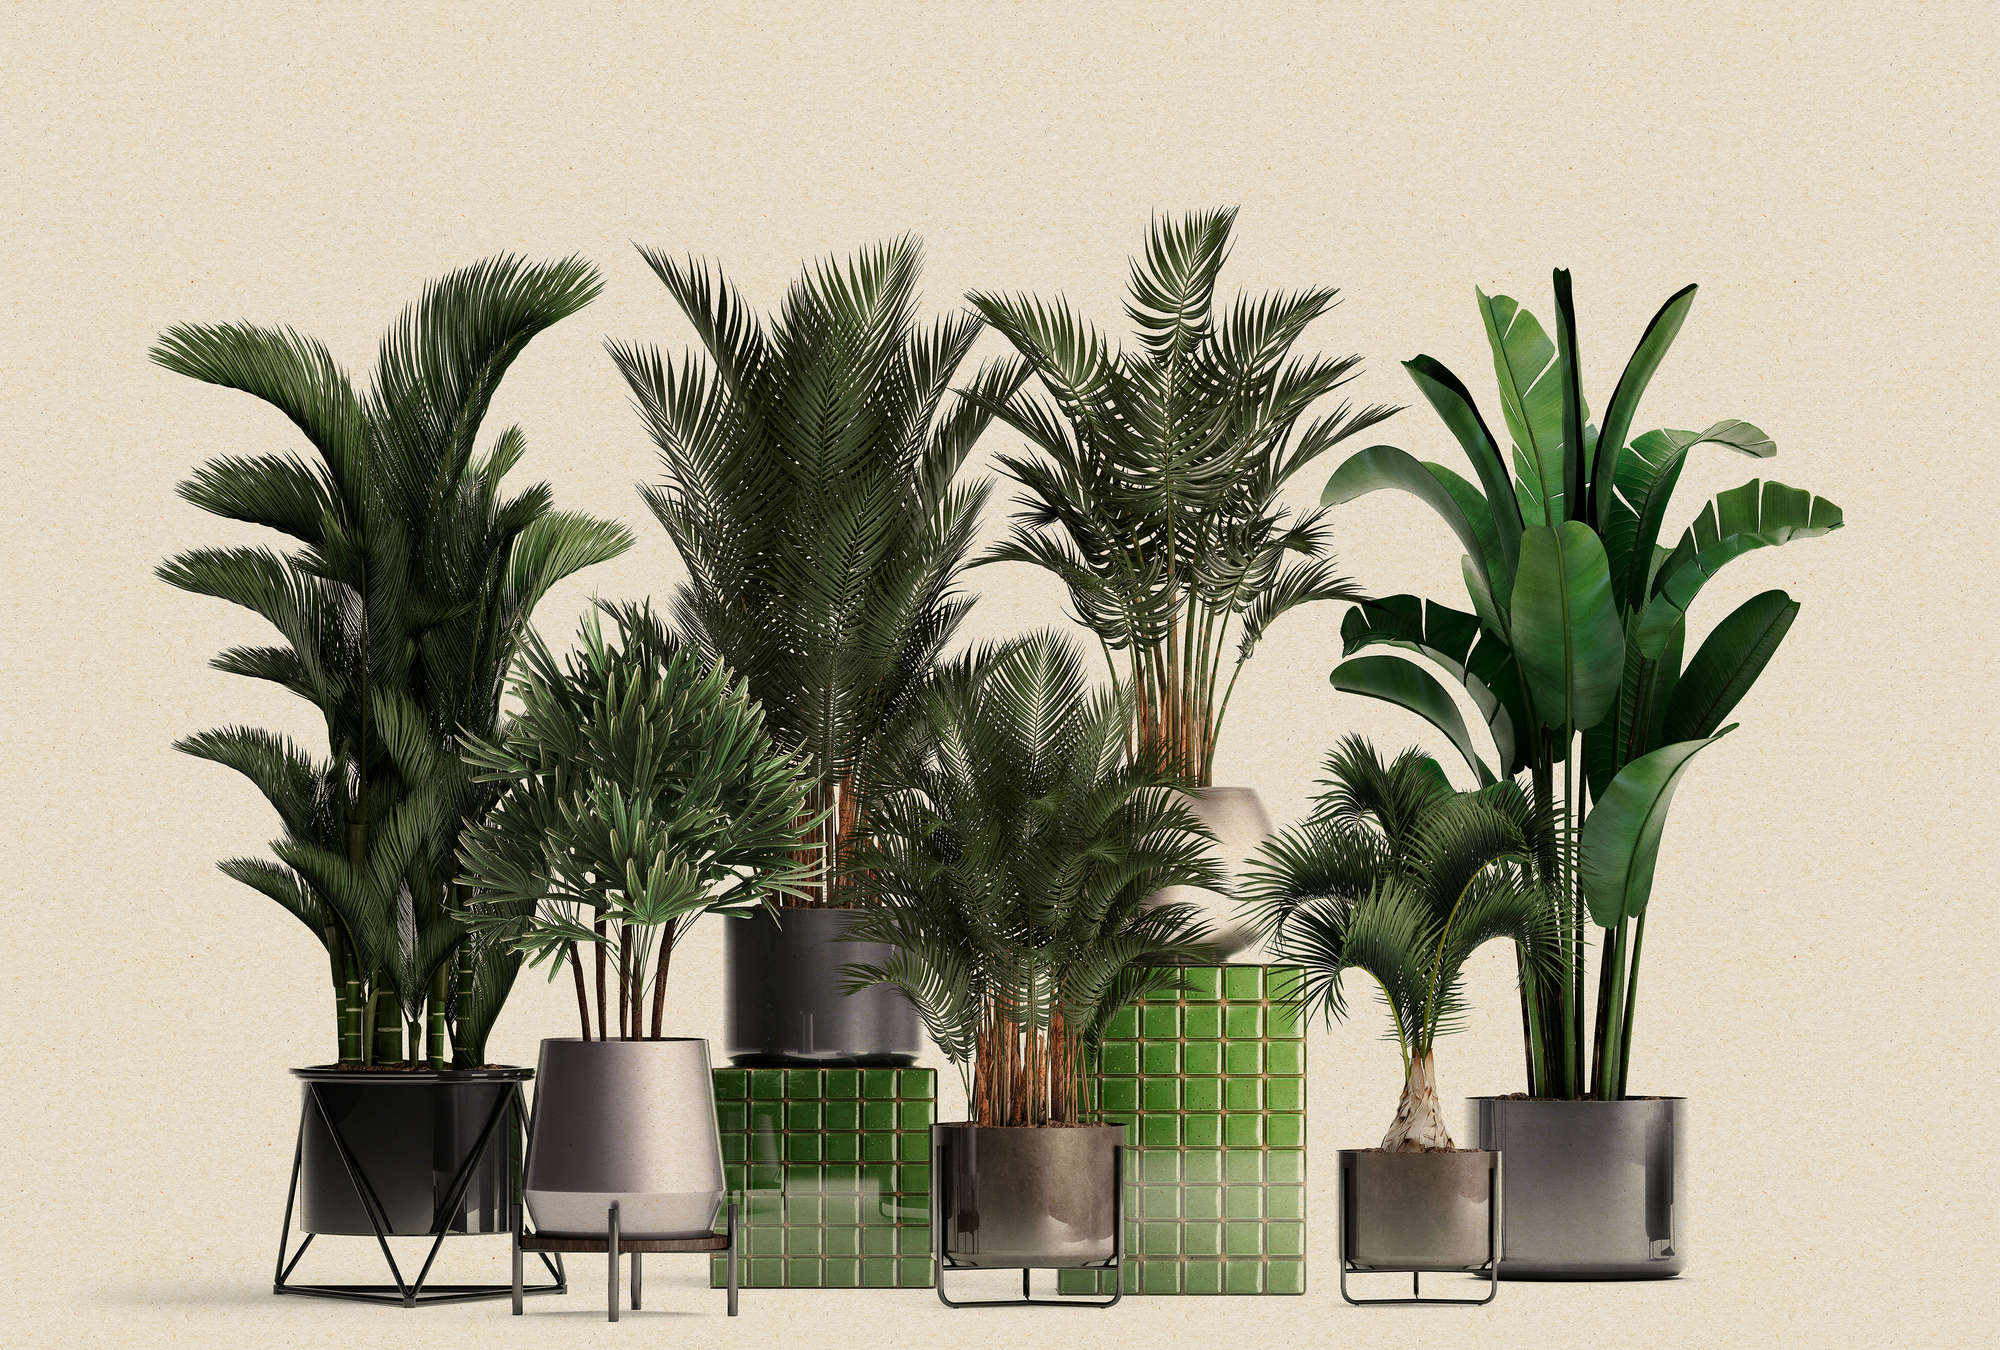             Negozio di piante 1 - natura foto wallpaper piante in vaso palme
        